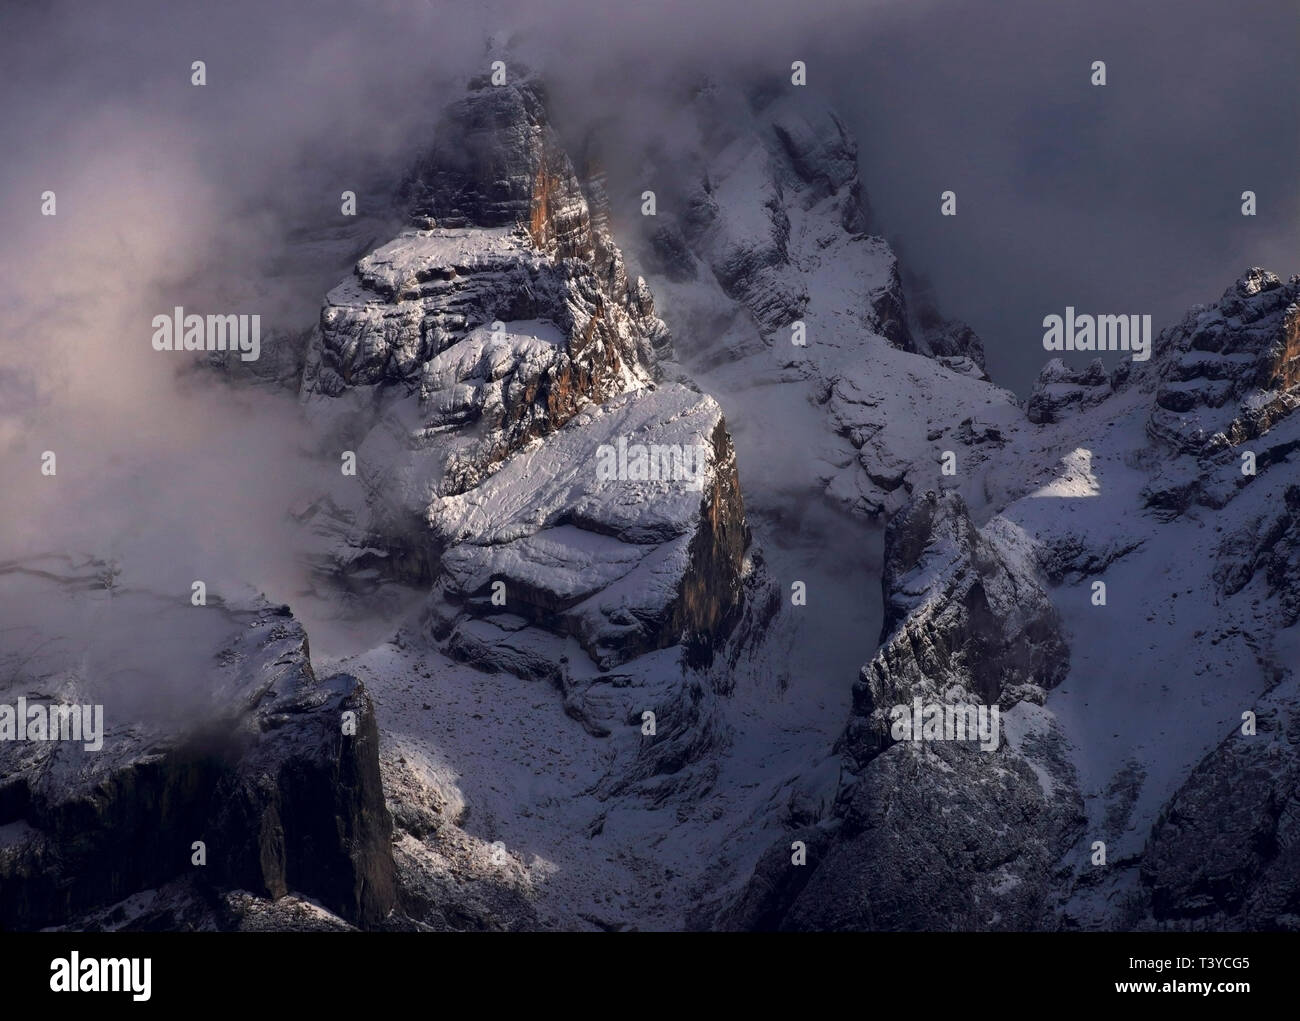 La maestosità del monte Antelao, il picco più alto della regione del Cadore, come si è visto al tramonto dai campi circostanti la città di Cortina d'Ampezzo, d Foto Stock